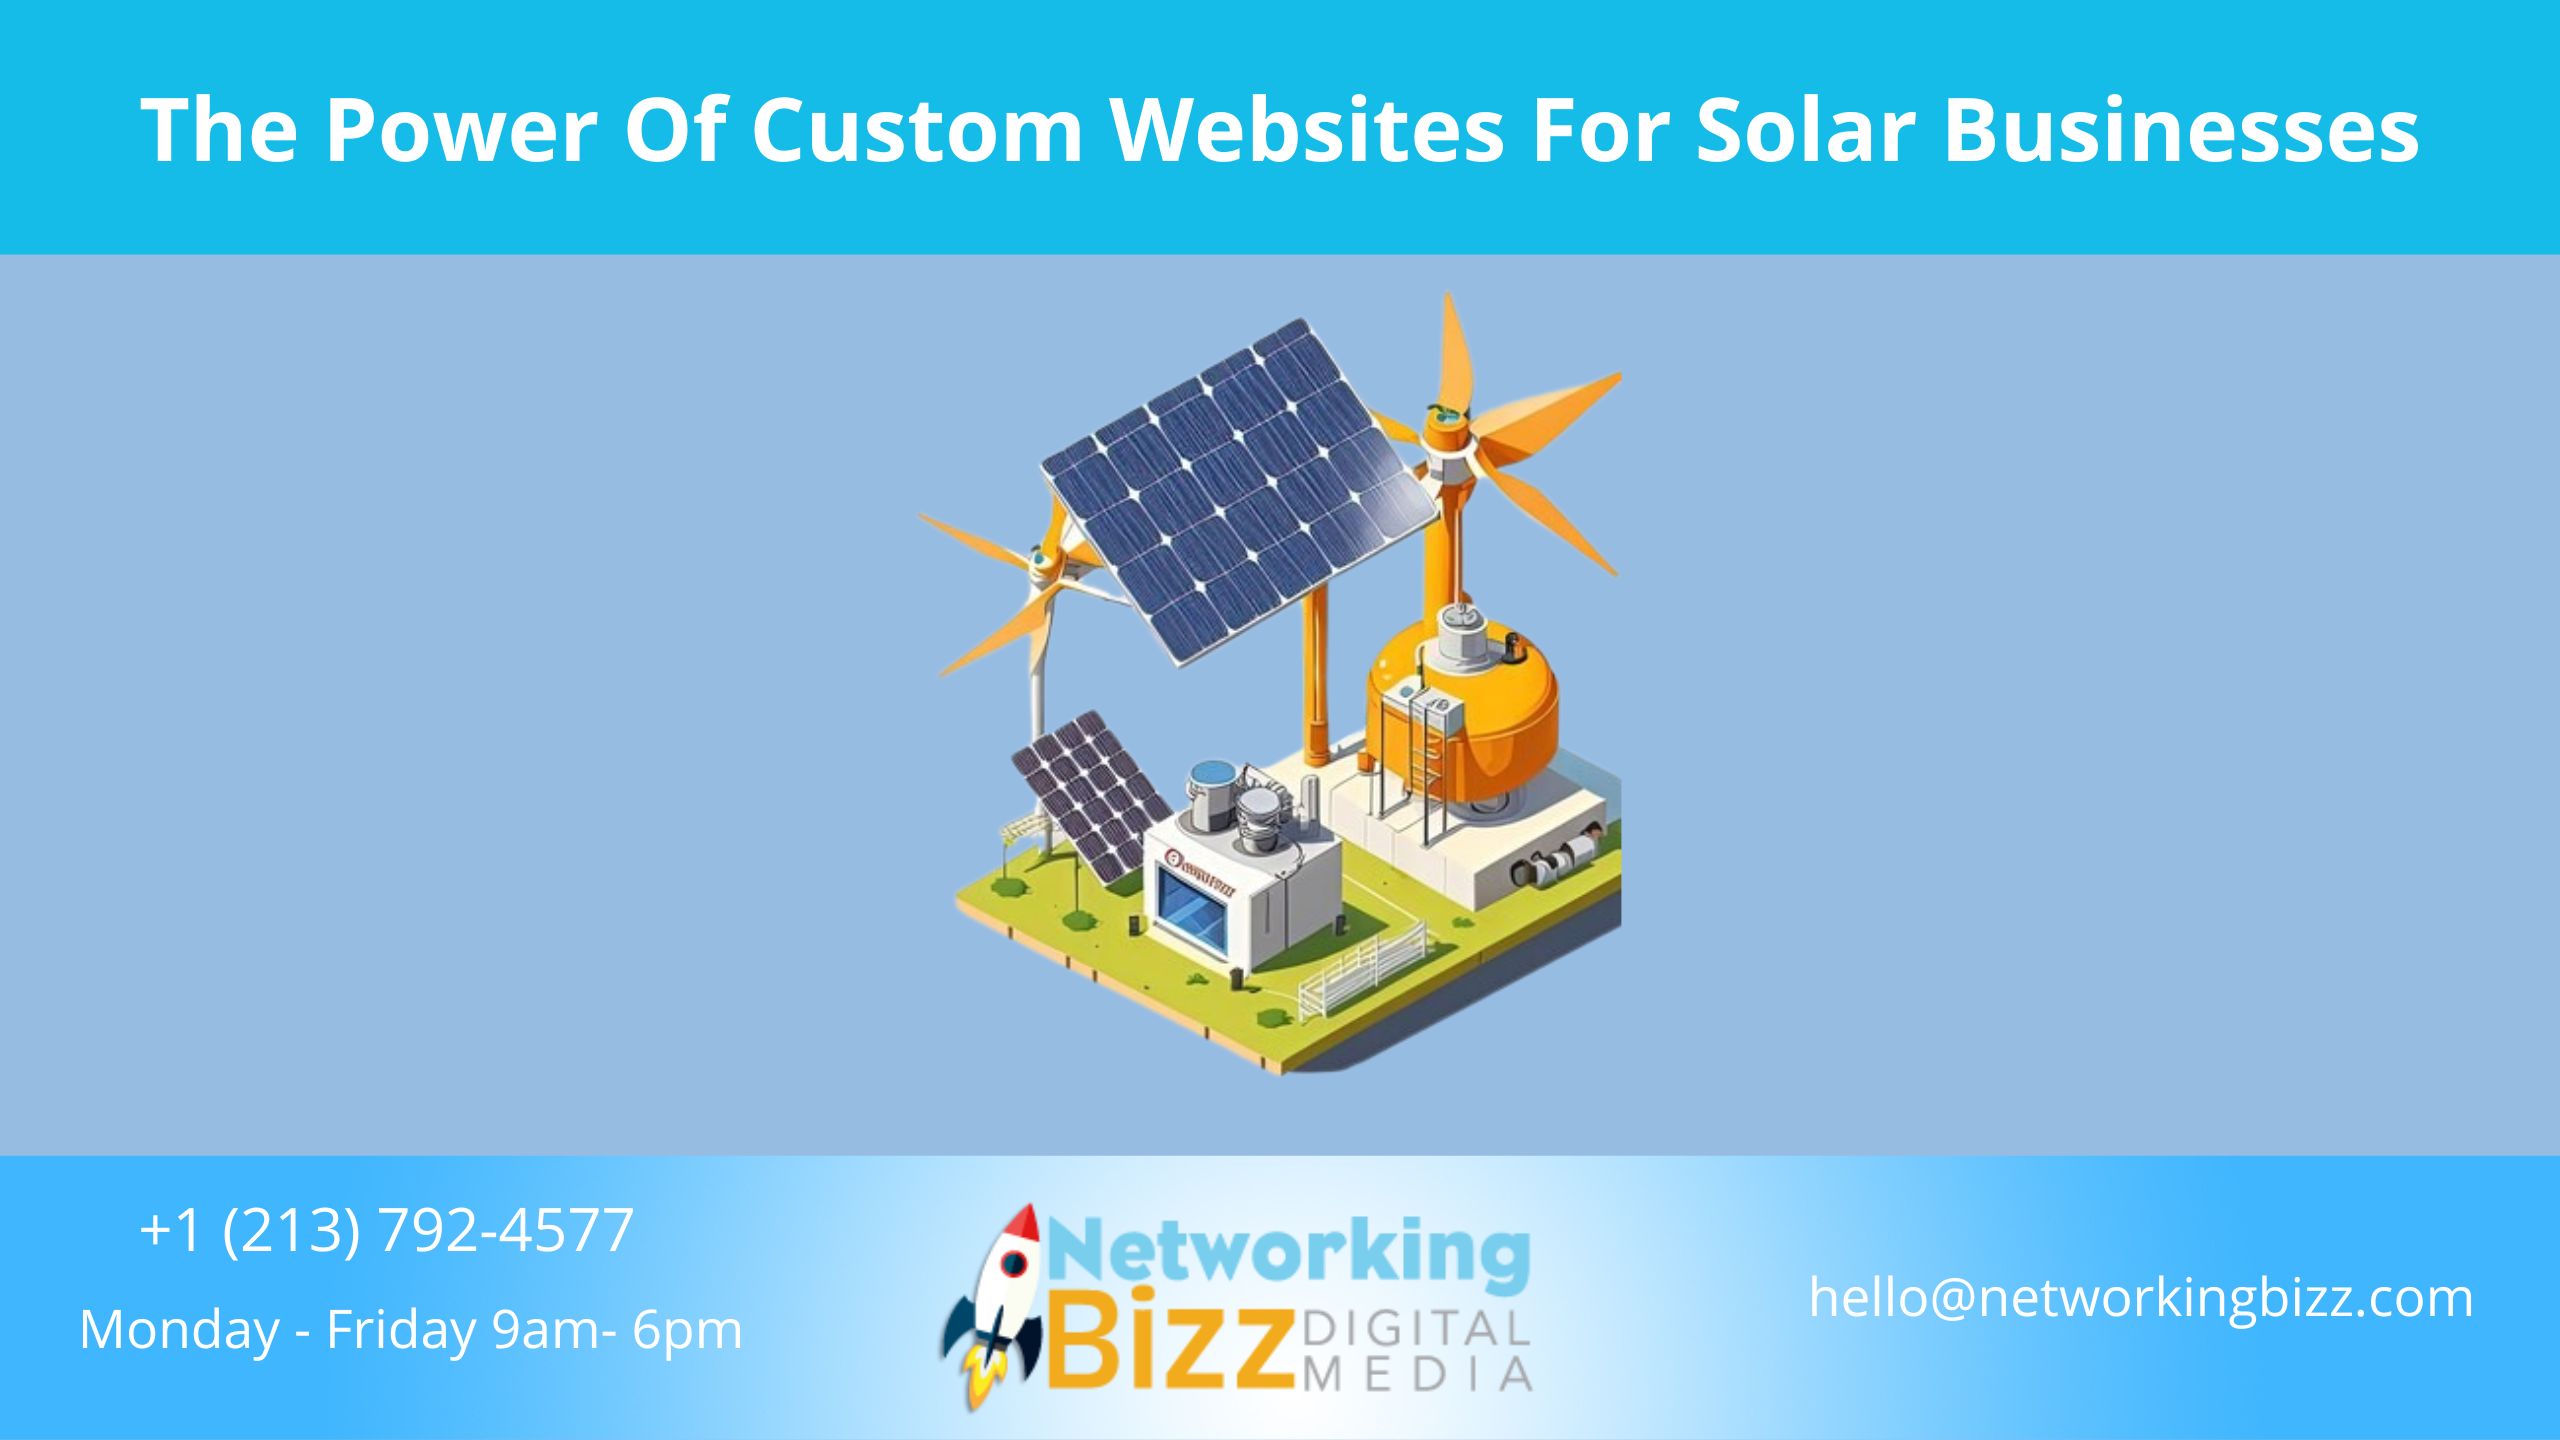 The Power Of Custom Websites For Solar Businesses